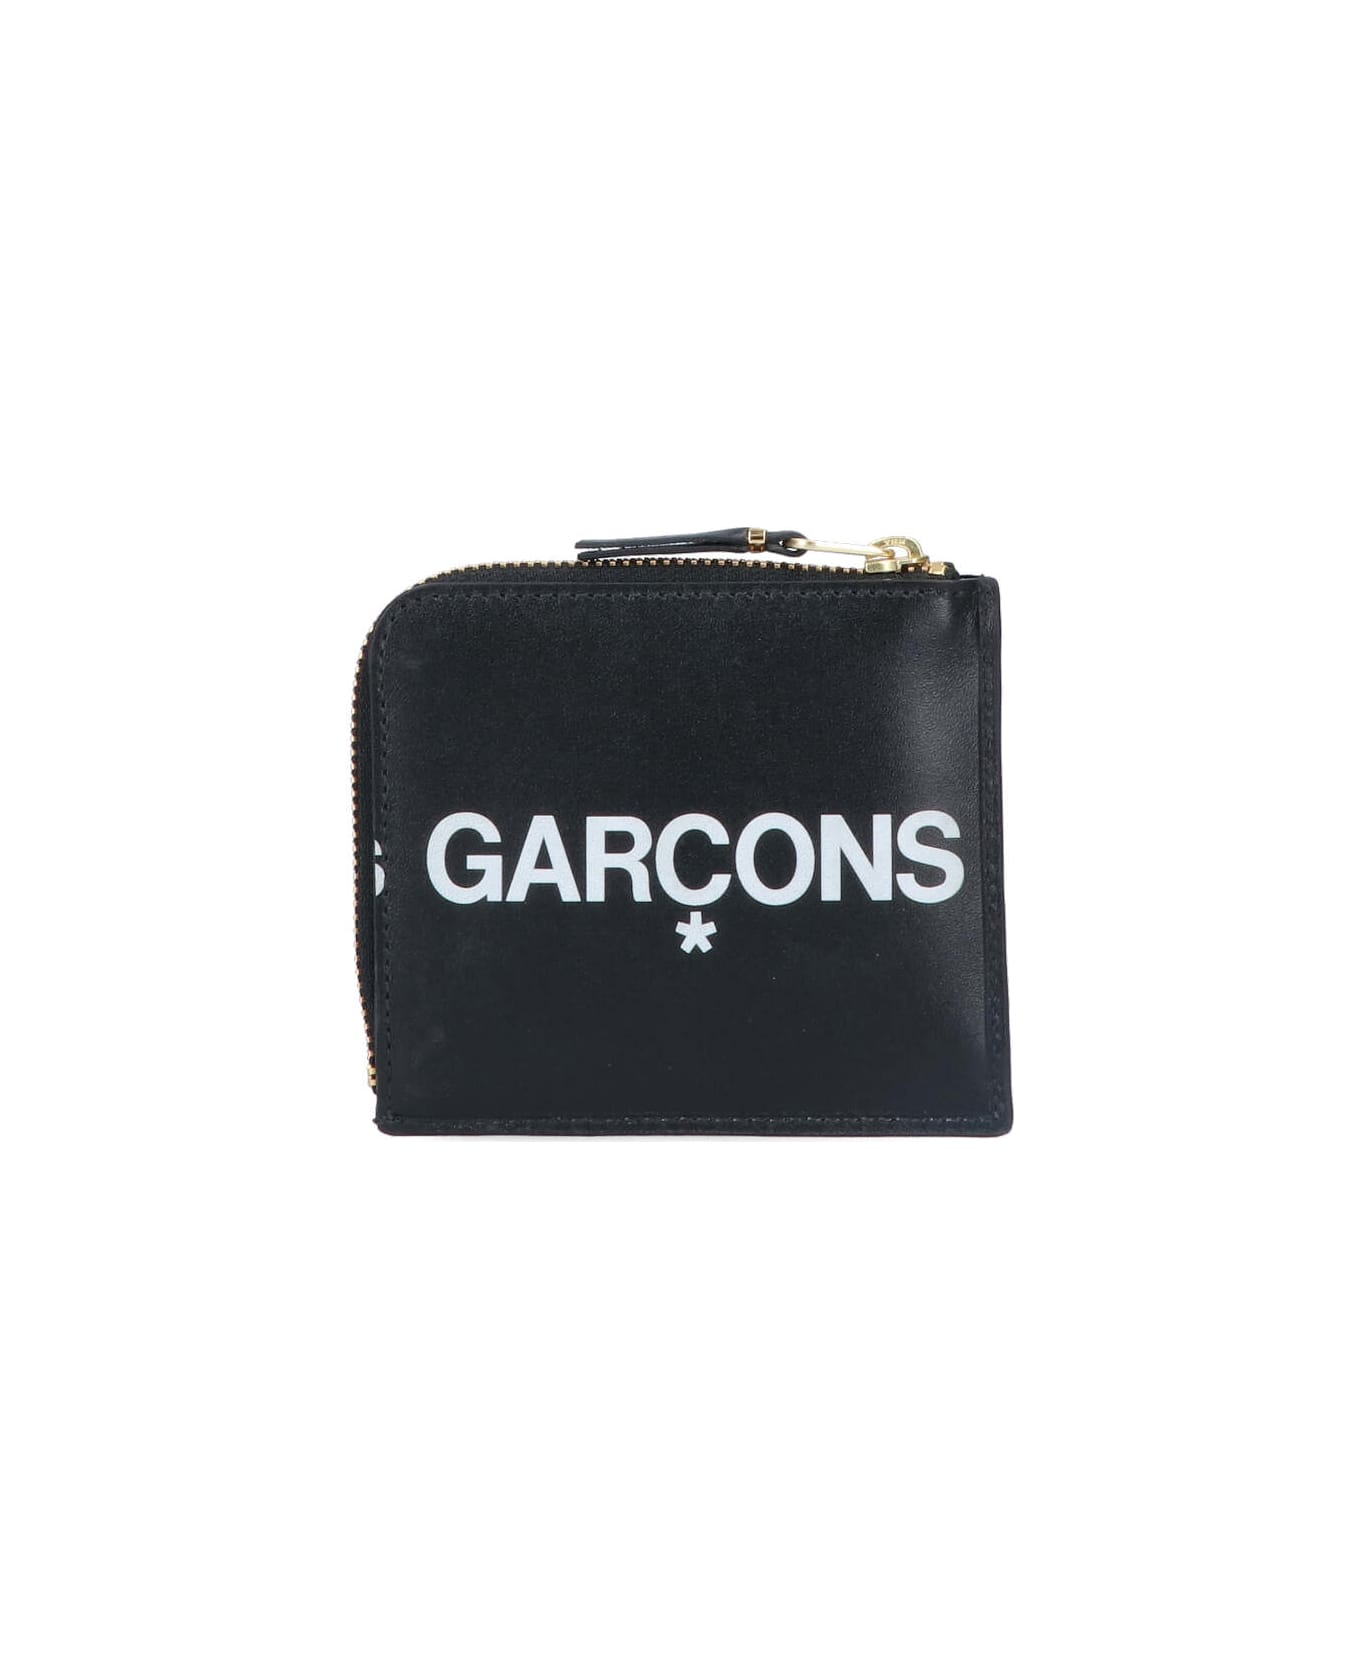 Comme des Garçons Wallet 'huge Logo' coin Purse - Black   財布